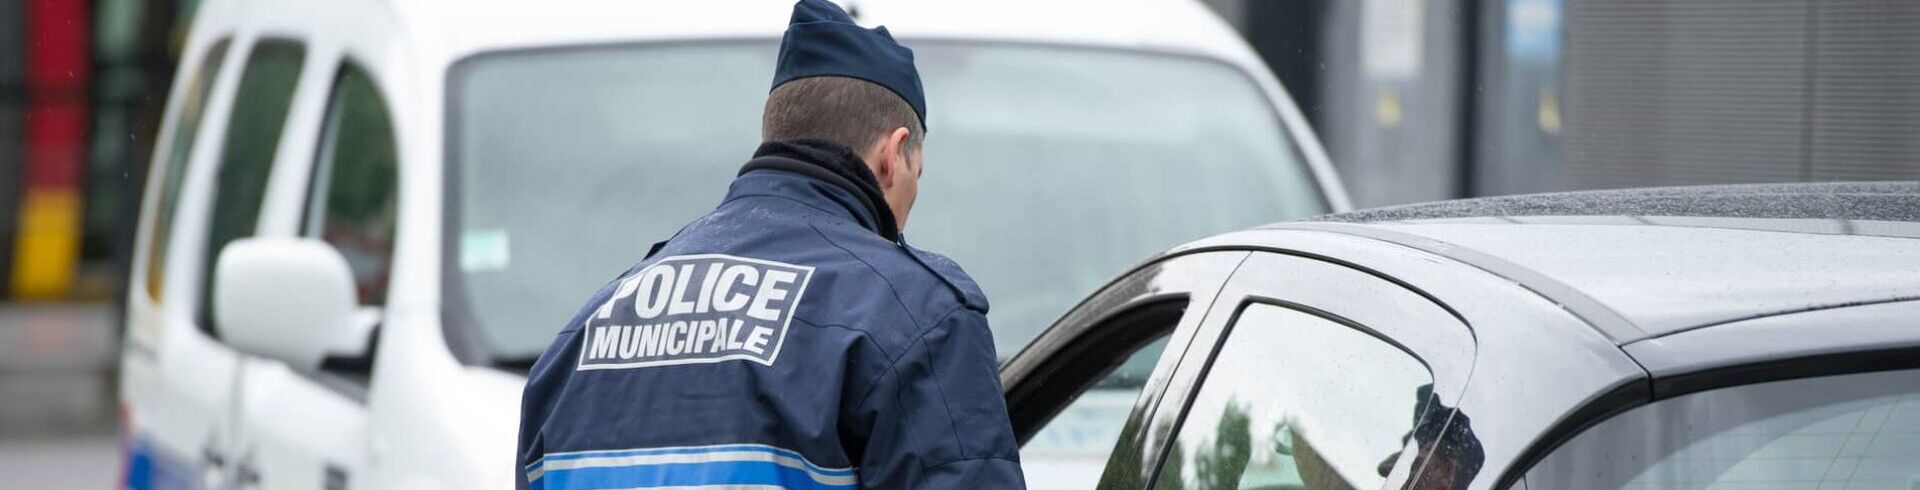 Policier municipal de Paris